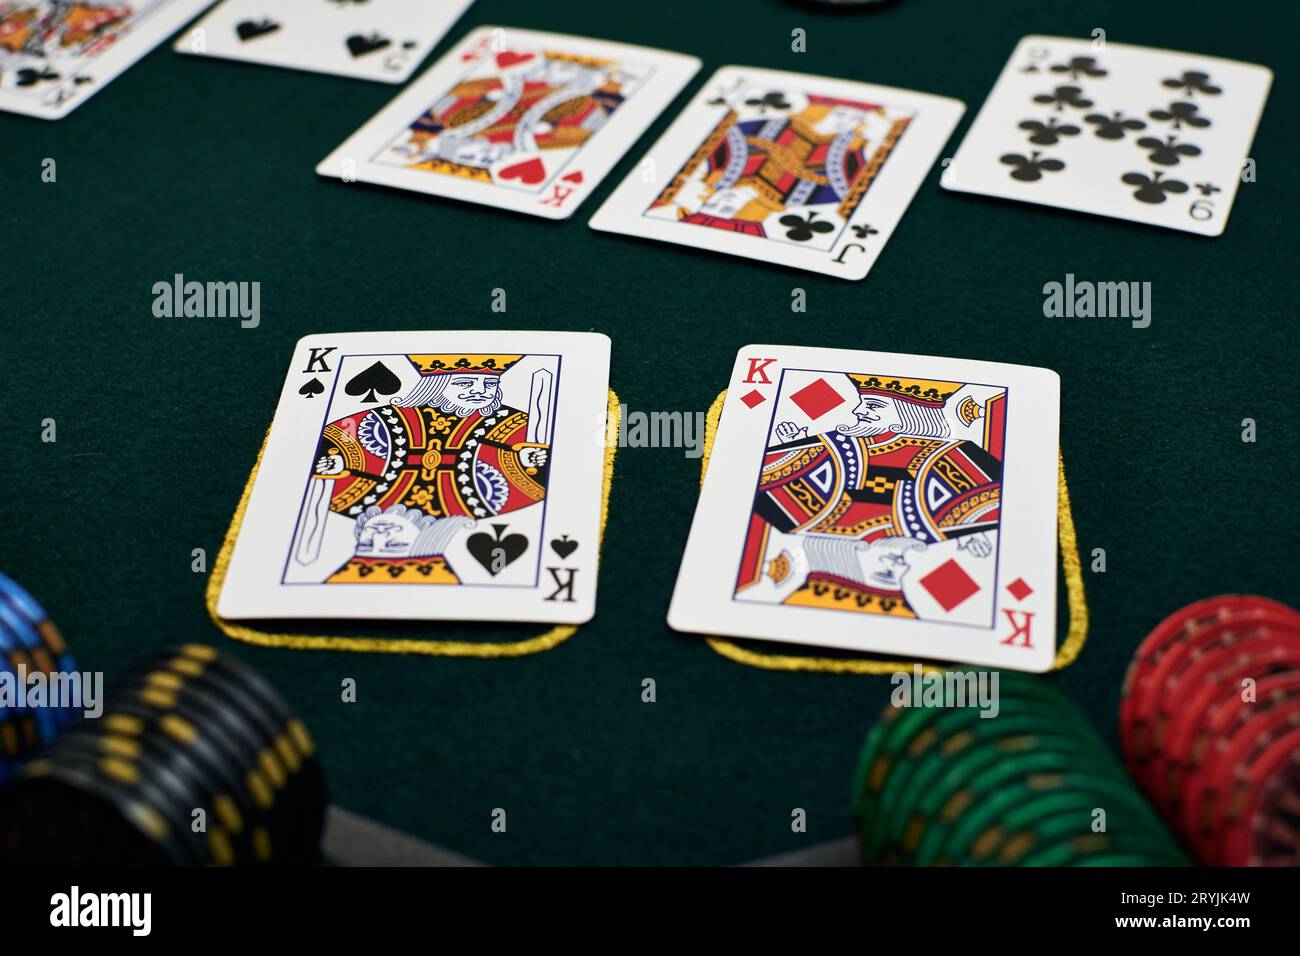 Los reyes de bolsillo hacen cuatro de un tipo en el enfrentamiento de póquer texas Hold'em y ganan el bote Foto de stock